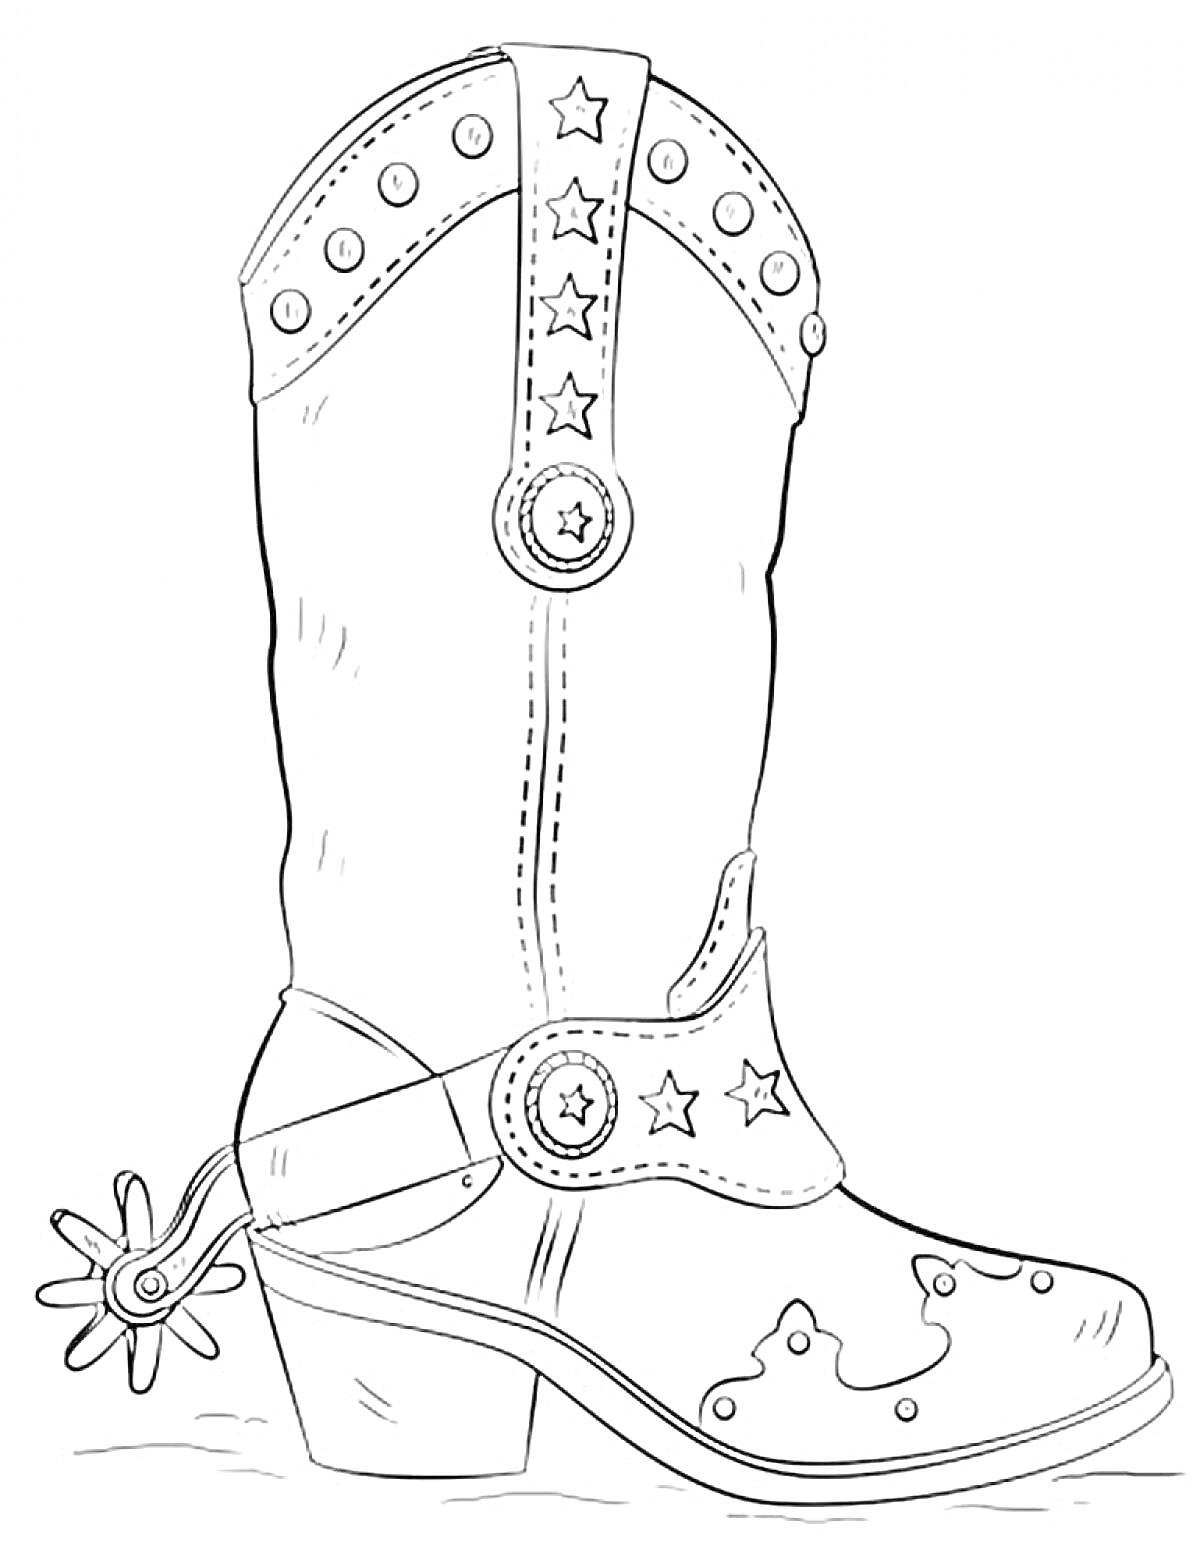 Раскраска Ковбойский сапог со звездочками, пряжками и шпорой